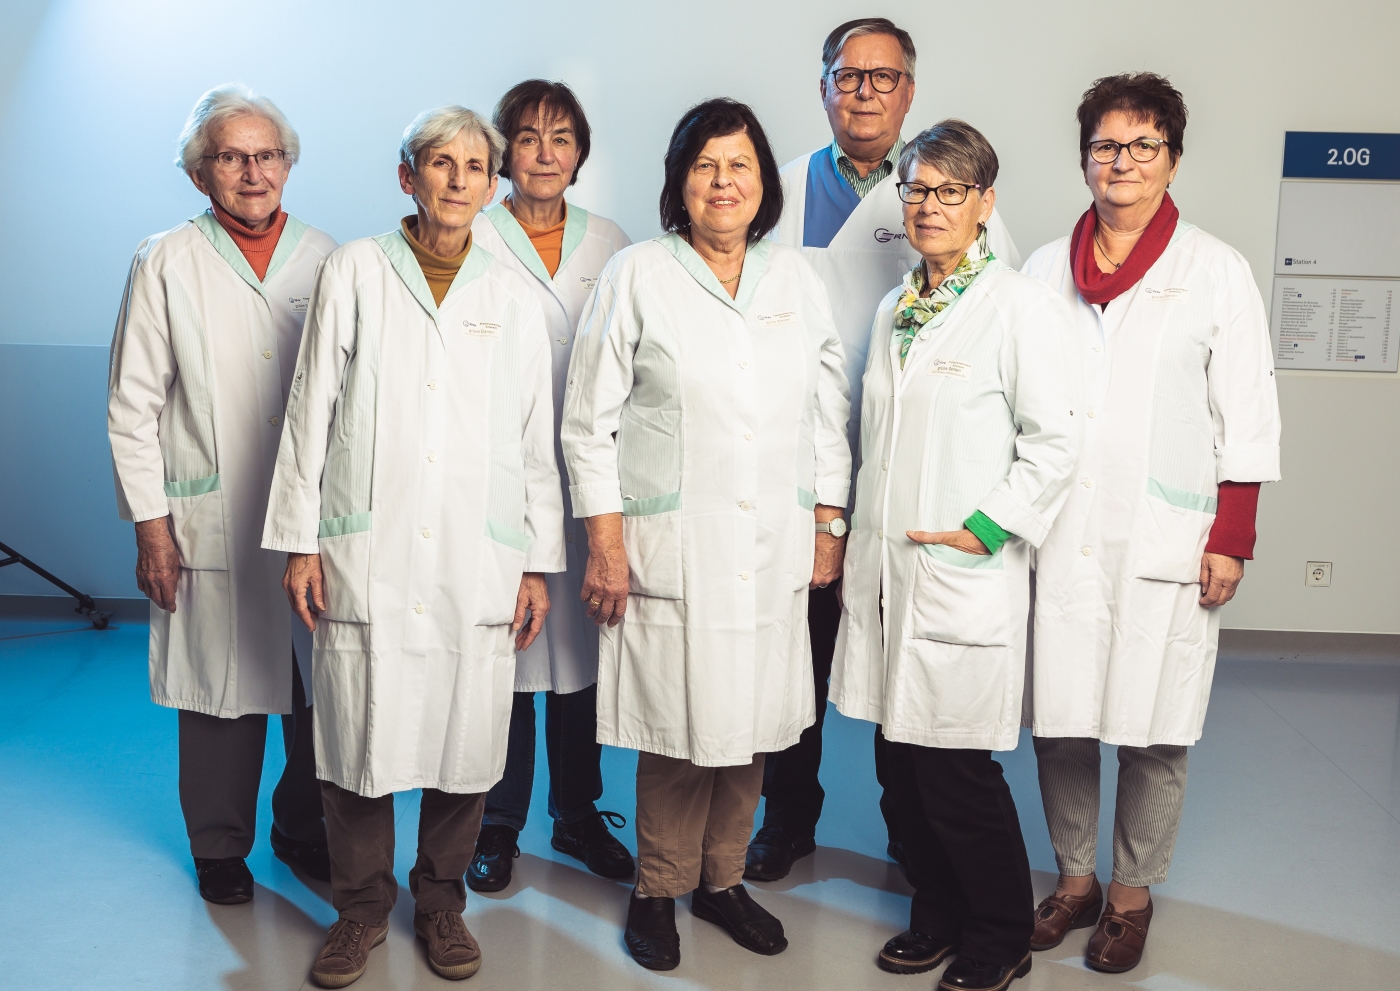 Die "Grünen Damen", bei denen aktuell auch zwei Herren tätig sind, engagieren sich seit Ende 2004 ehrenamtlich in der GRN-Klinik Sinsheim. Foto: GRN